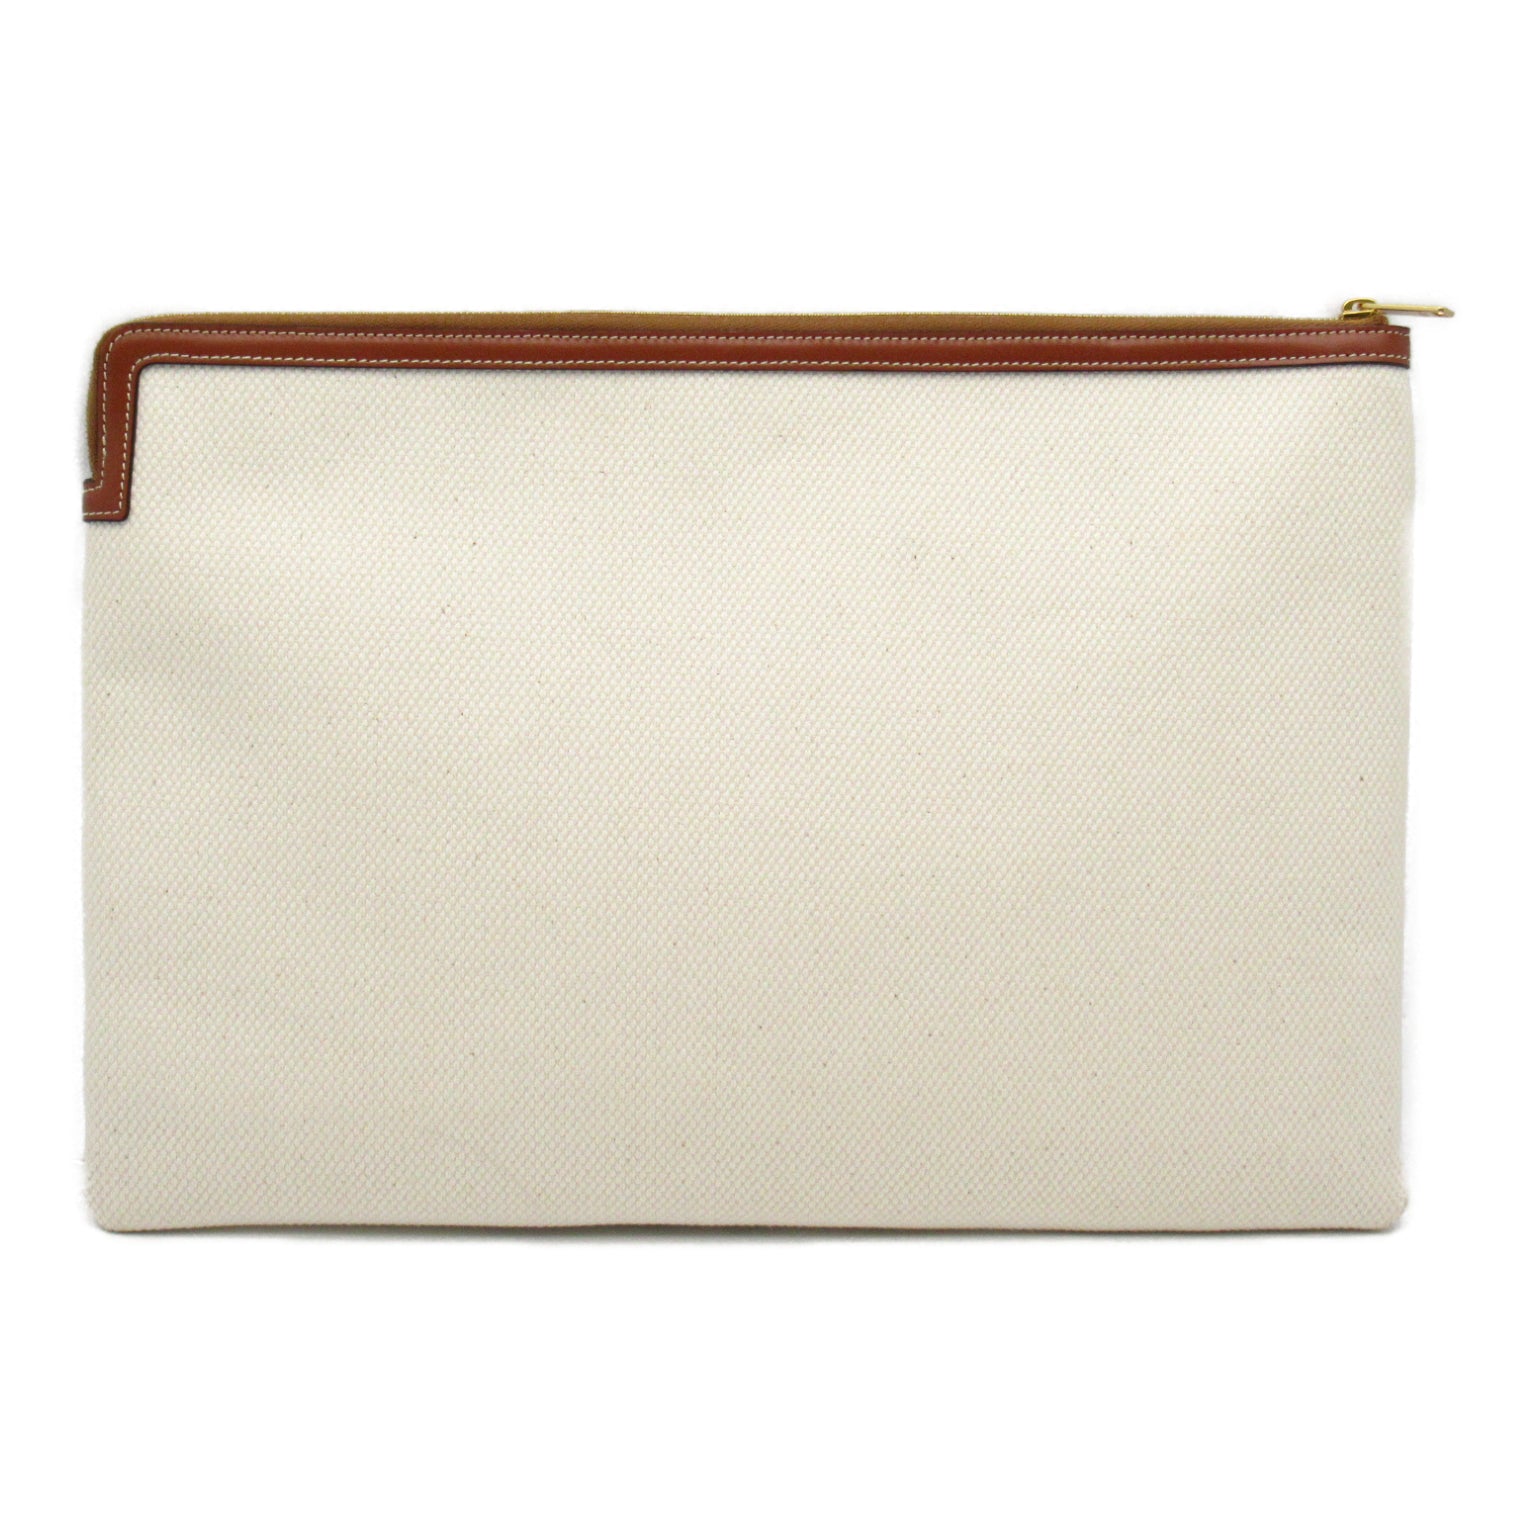 Celine Celline Clutch Bag Second Cratch Bag Cotton Bag  White